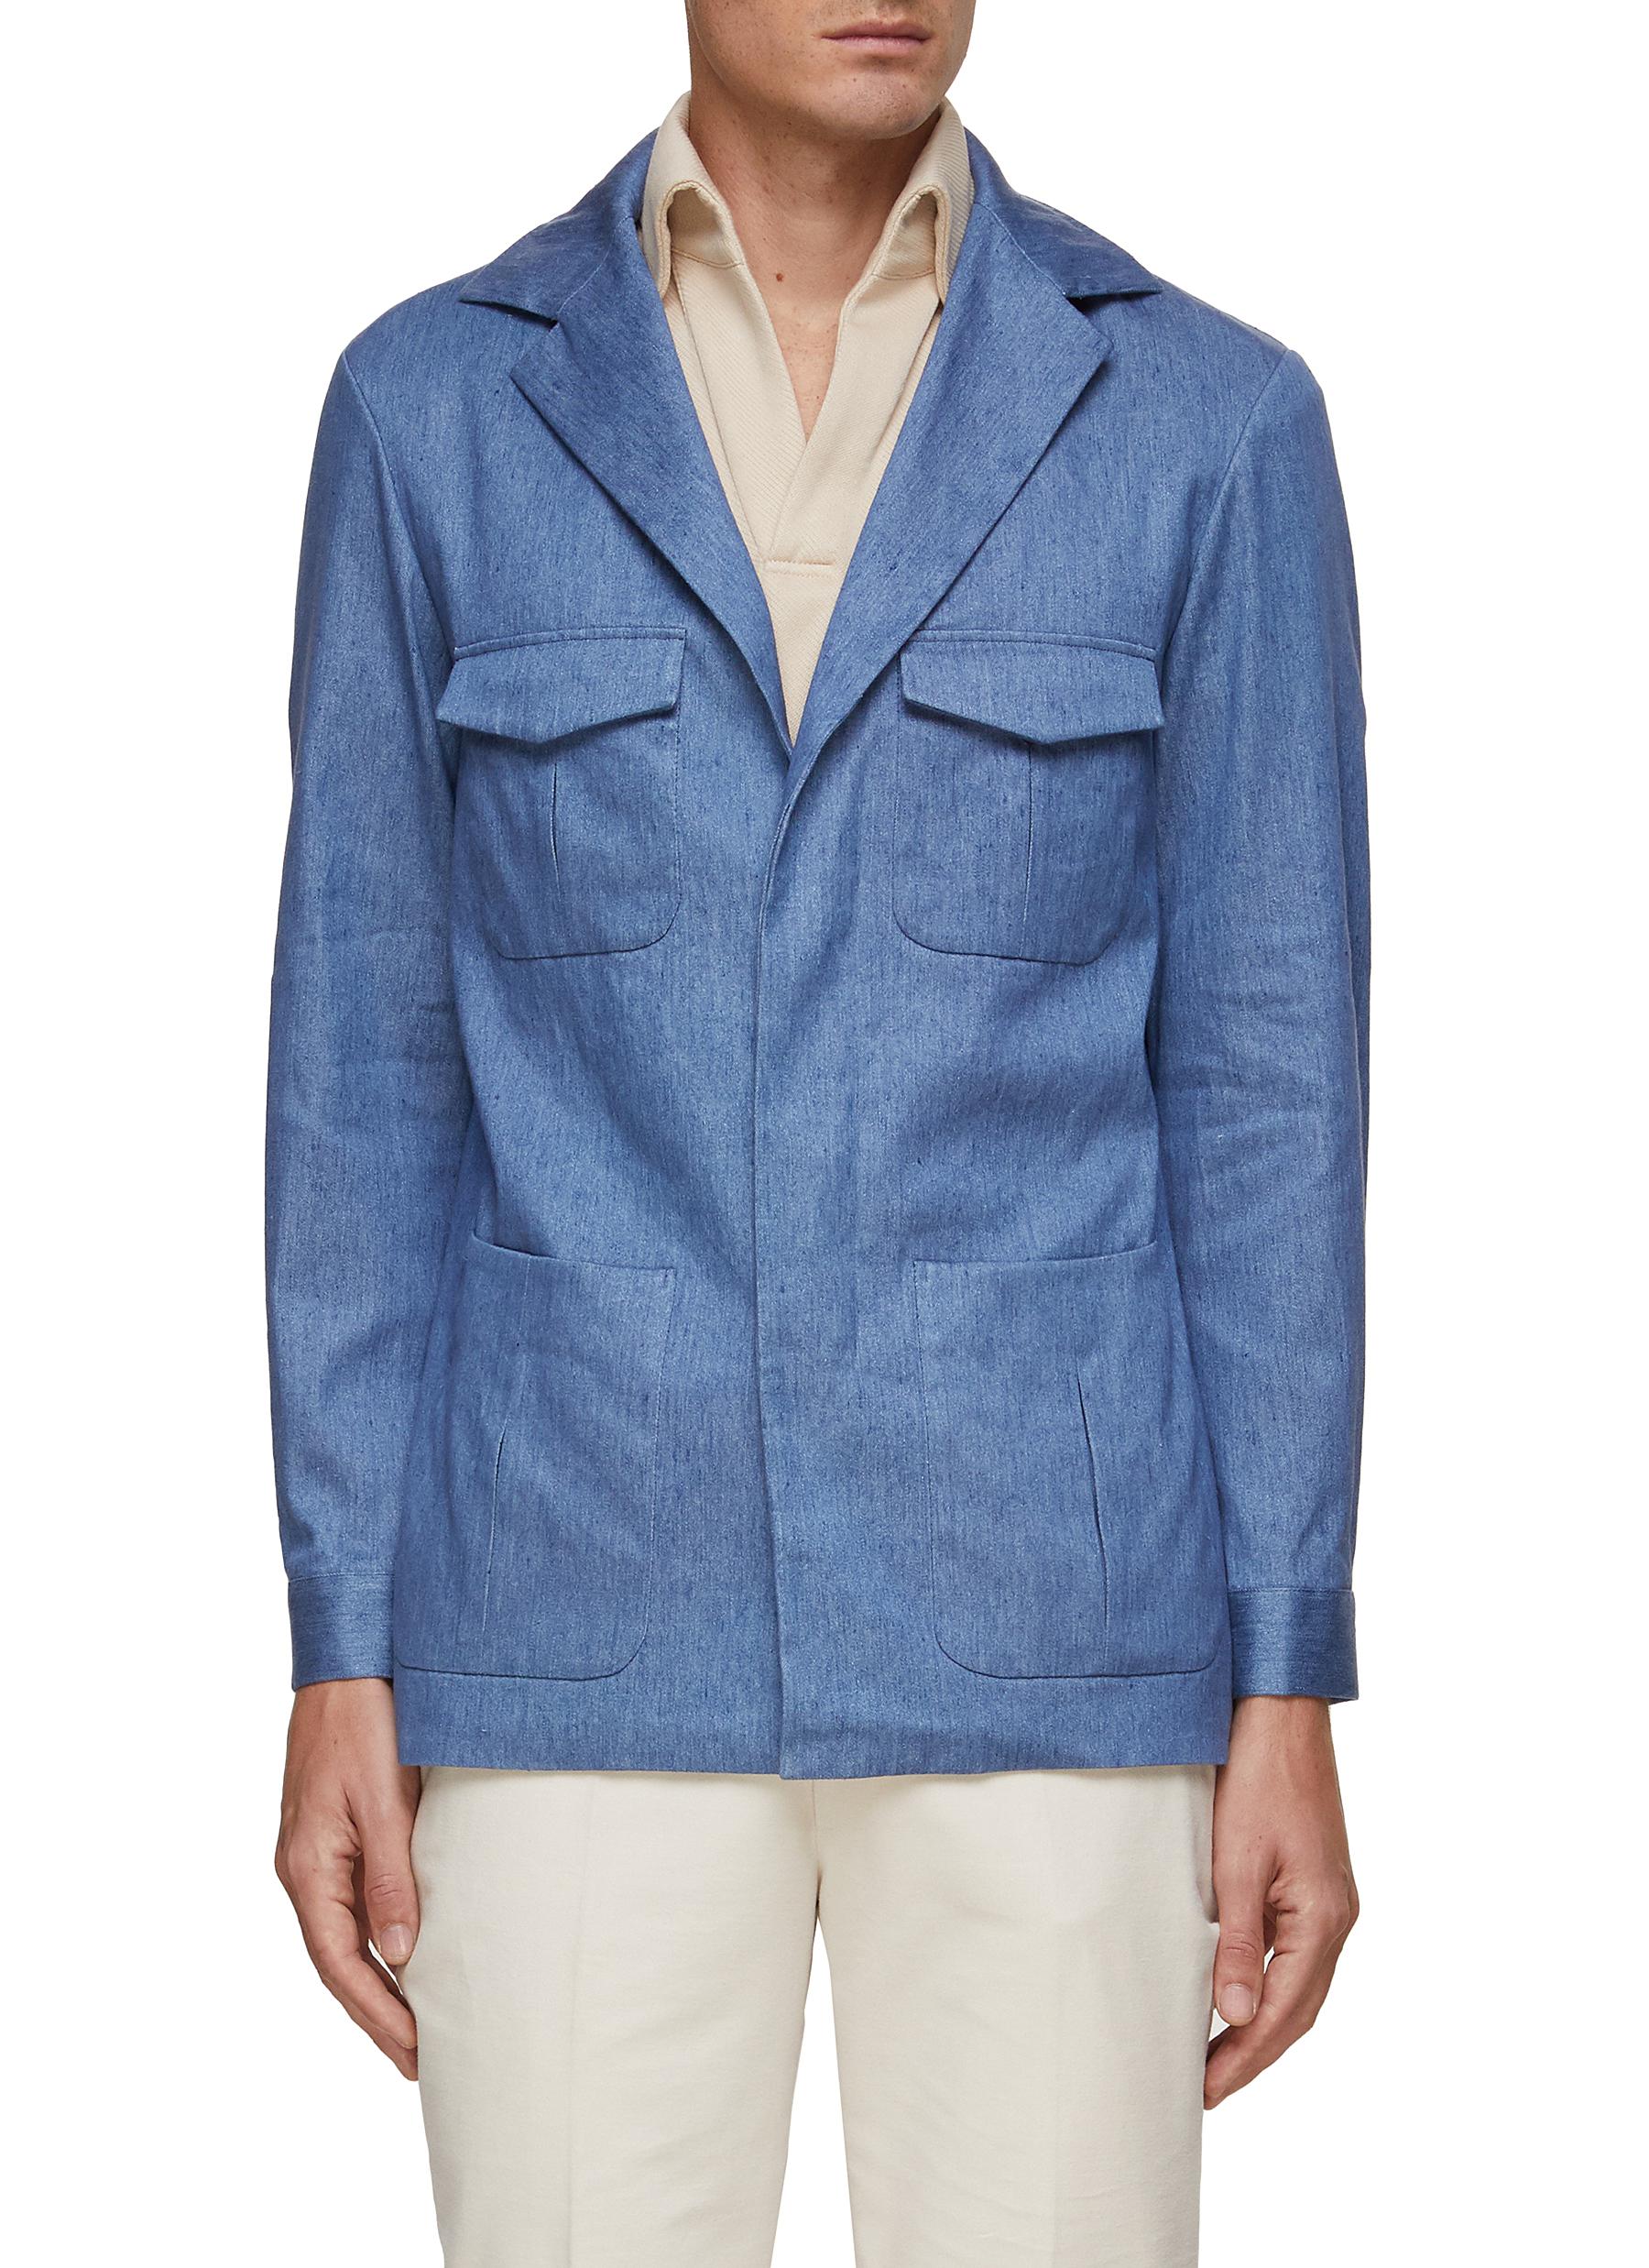 MAGNUS & NOVUS Patch Pocket Linen Cotton Blend Weekender Jacket